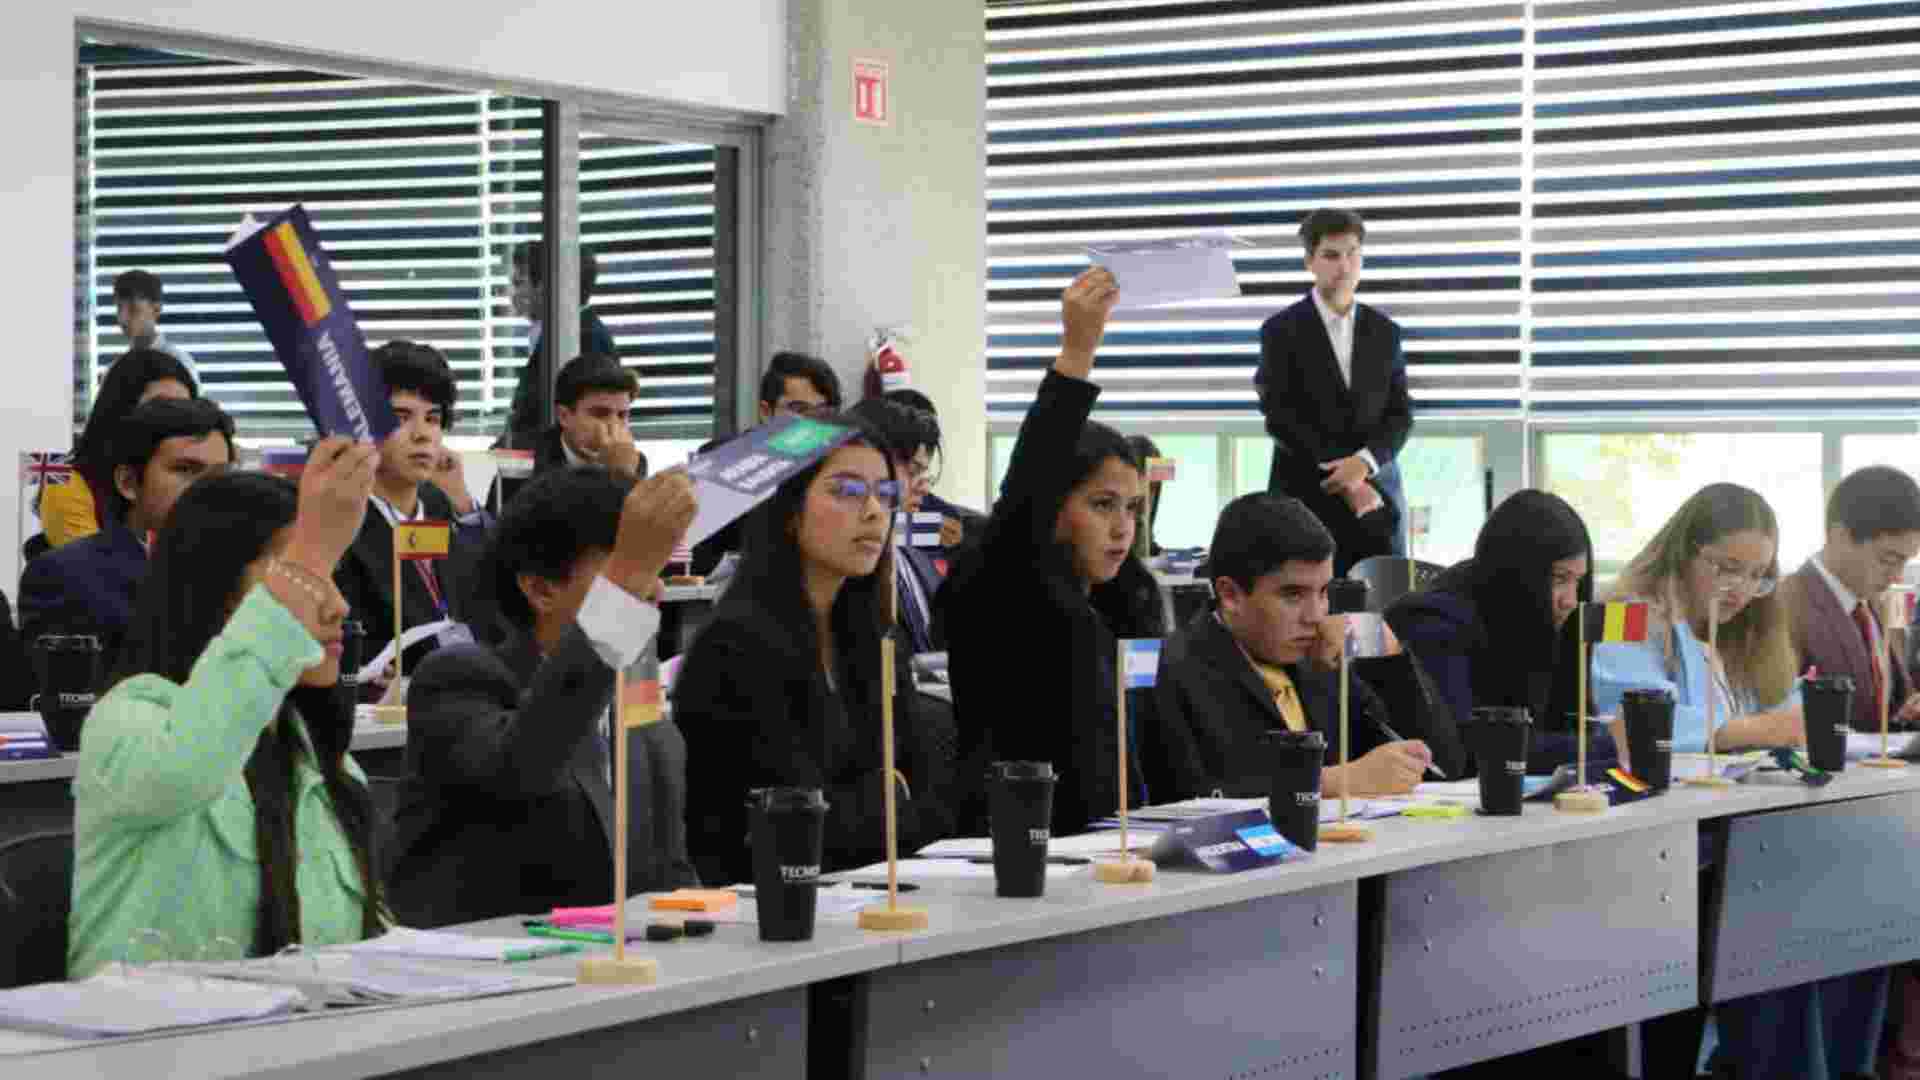 Durante TECMUN, los delegados tienen que participar activamente aportando ideas o perspectivas a los temas discutidos.